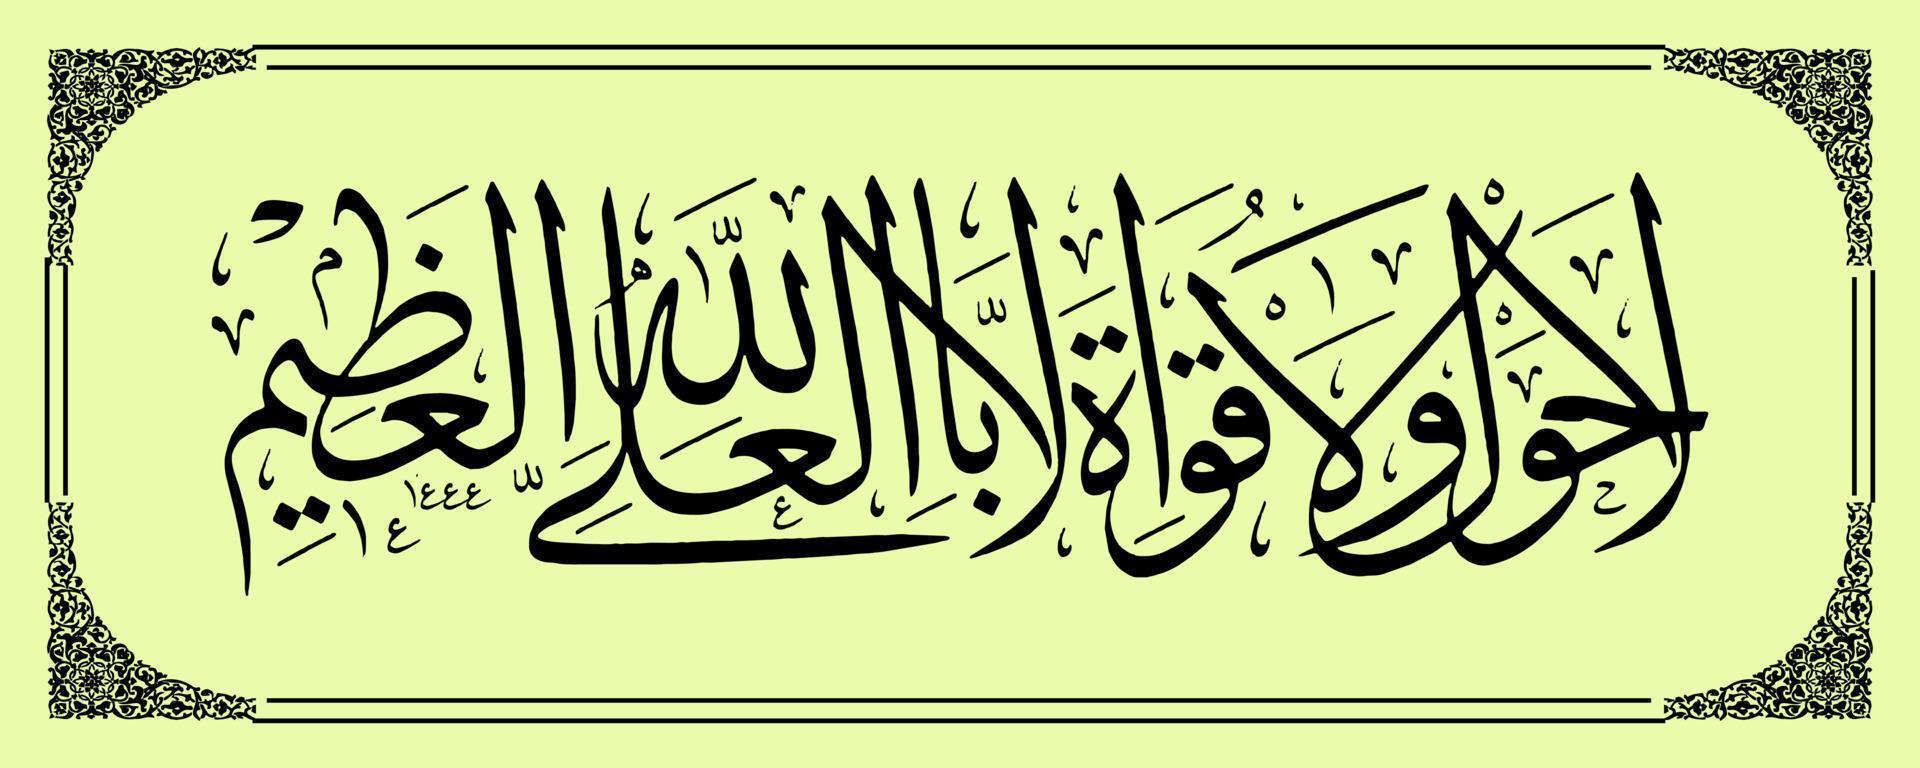 calligraphie arabe, traduction al qur'an il n'y a de pouvoir et d'effort que par le pouvoir d'allah, le plus haut, le plus grand. vecteur